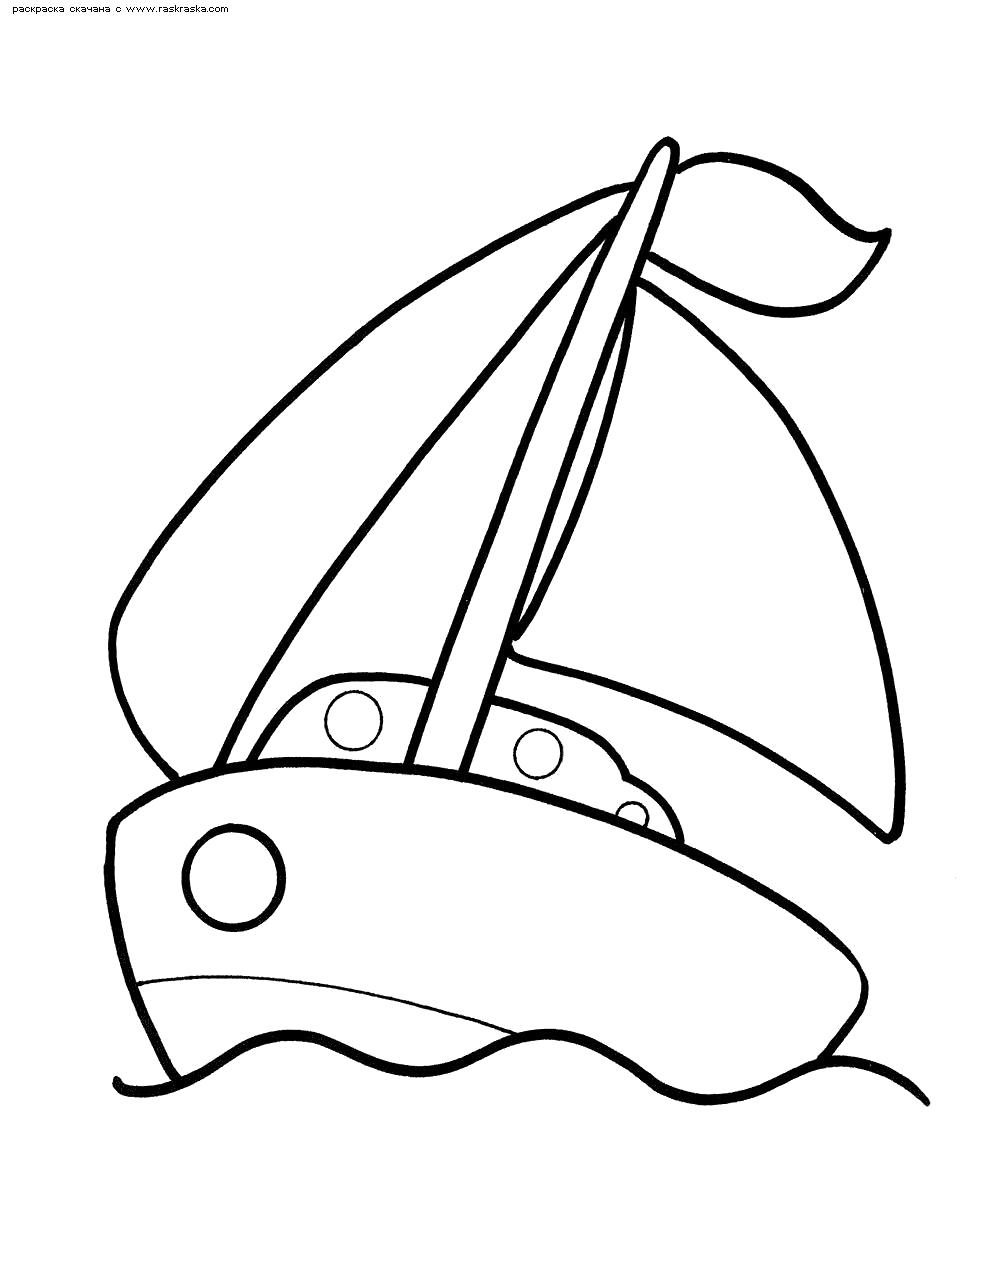 Раскраска  Кораблик.  Игрушечный кораблик  для детей . Скачать Кораблик.  Распечатать Кораблик